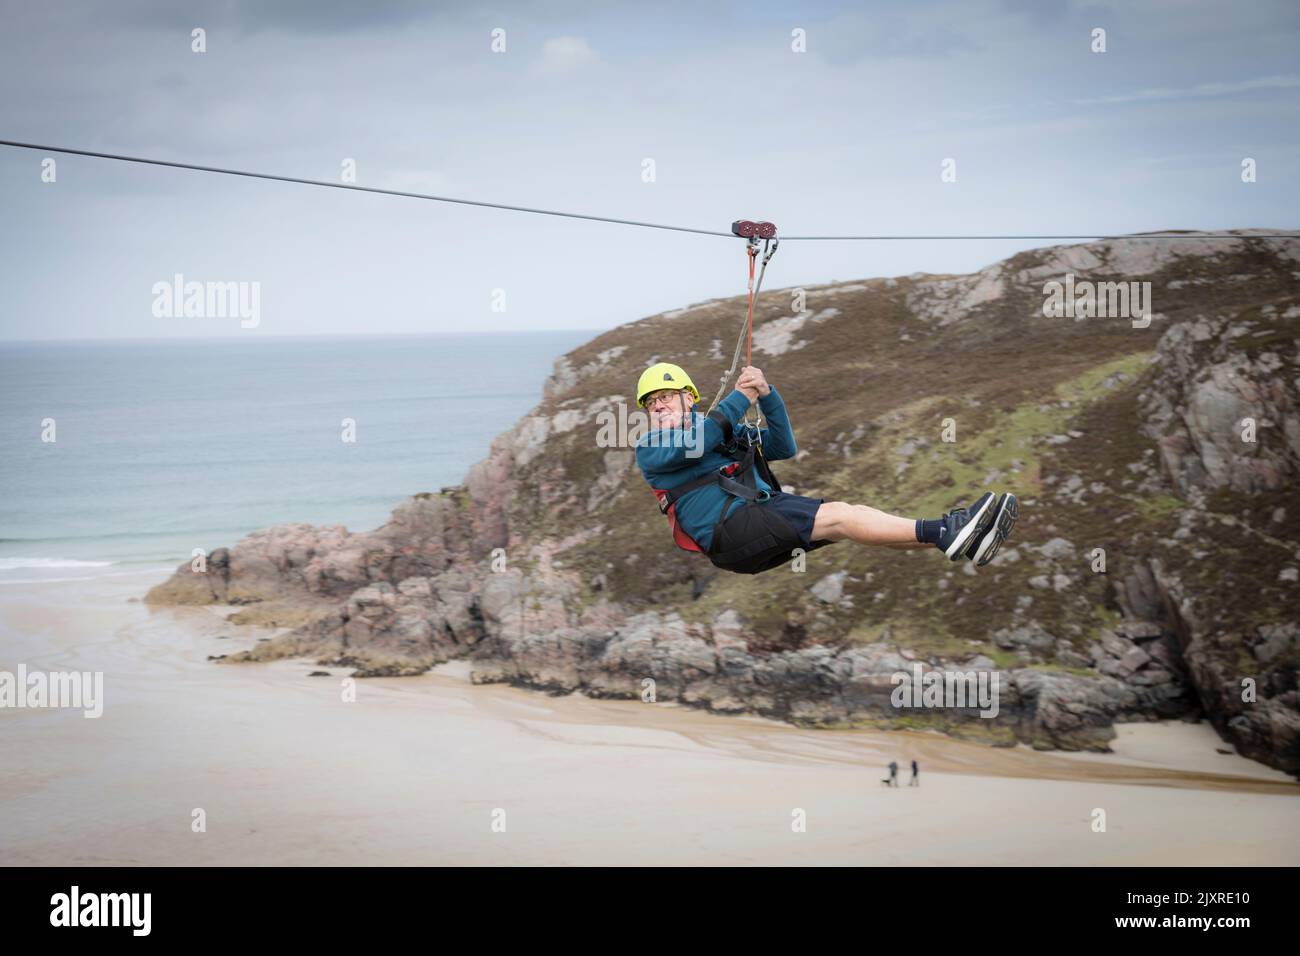 Man enjoying a zip wire ride above Ceannabeinne Beach, Scotland. Stock Photo